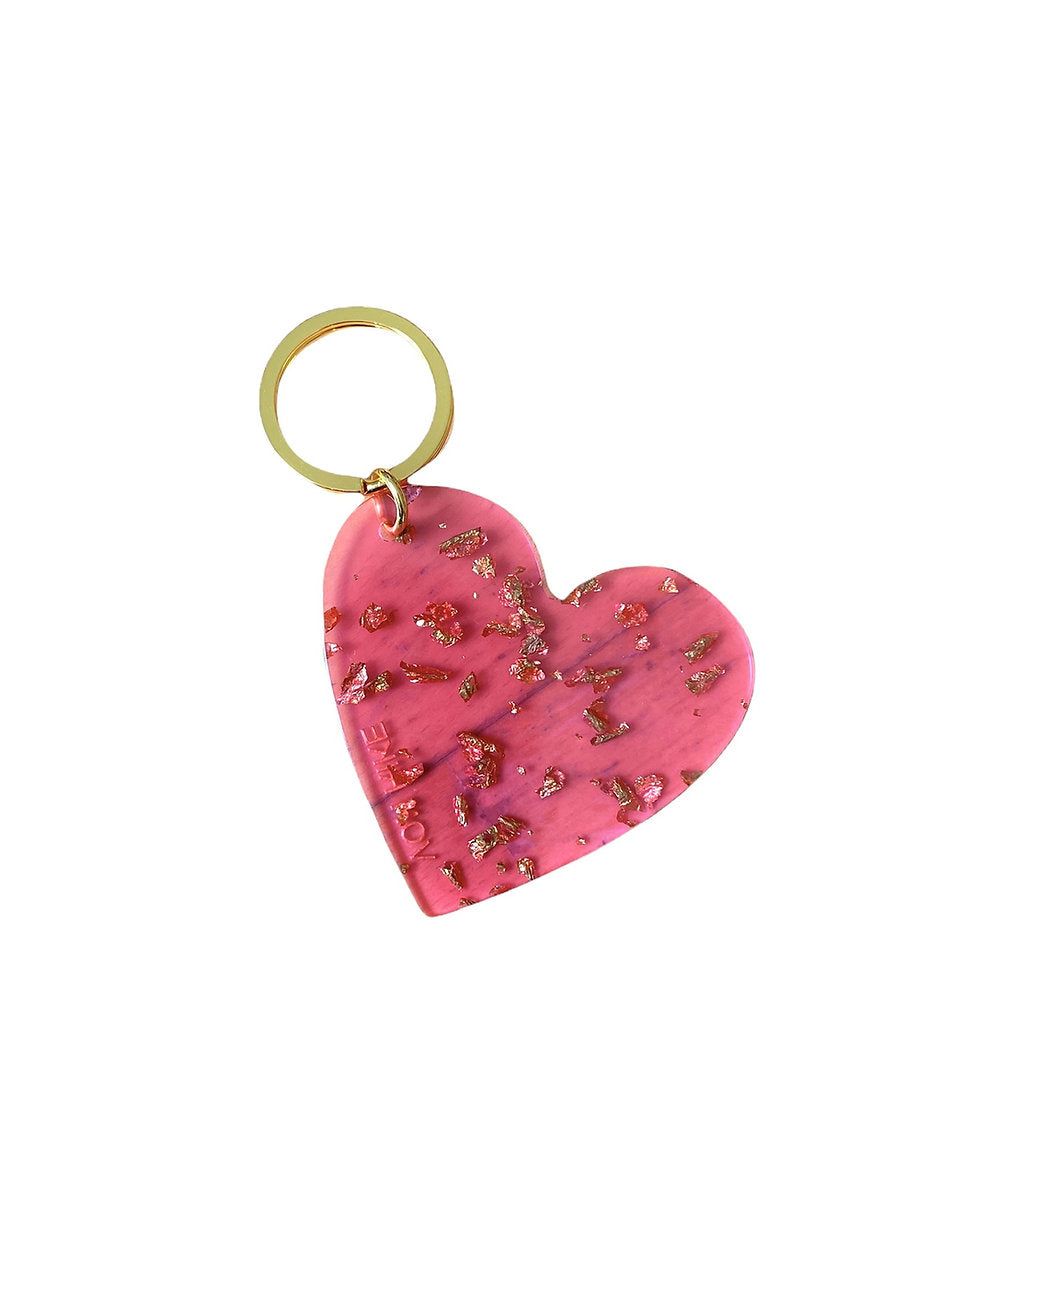 Von Rike - Schlüsselanhänger Herz pink - AURYN Shop